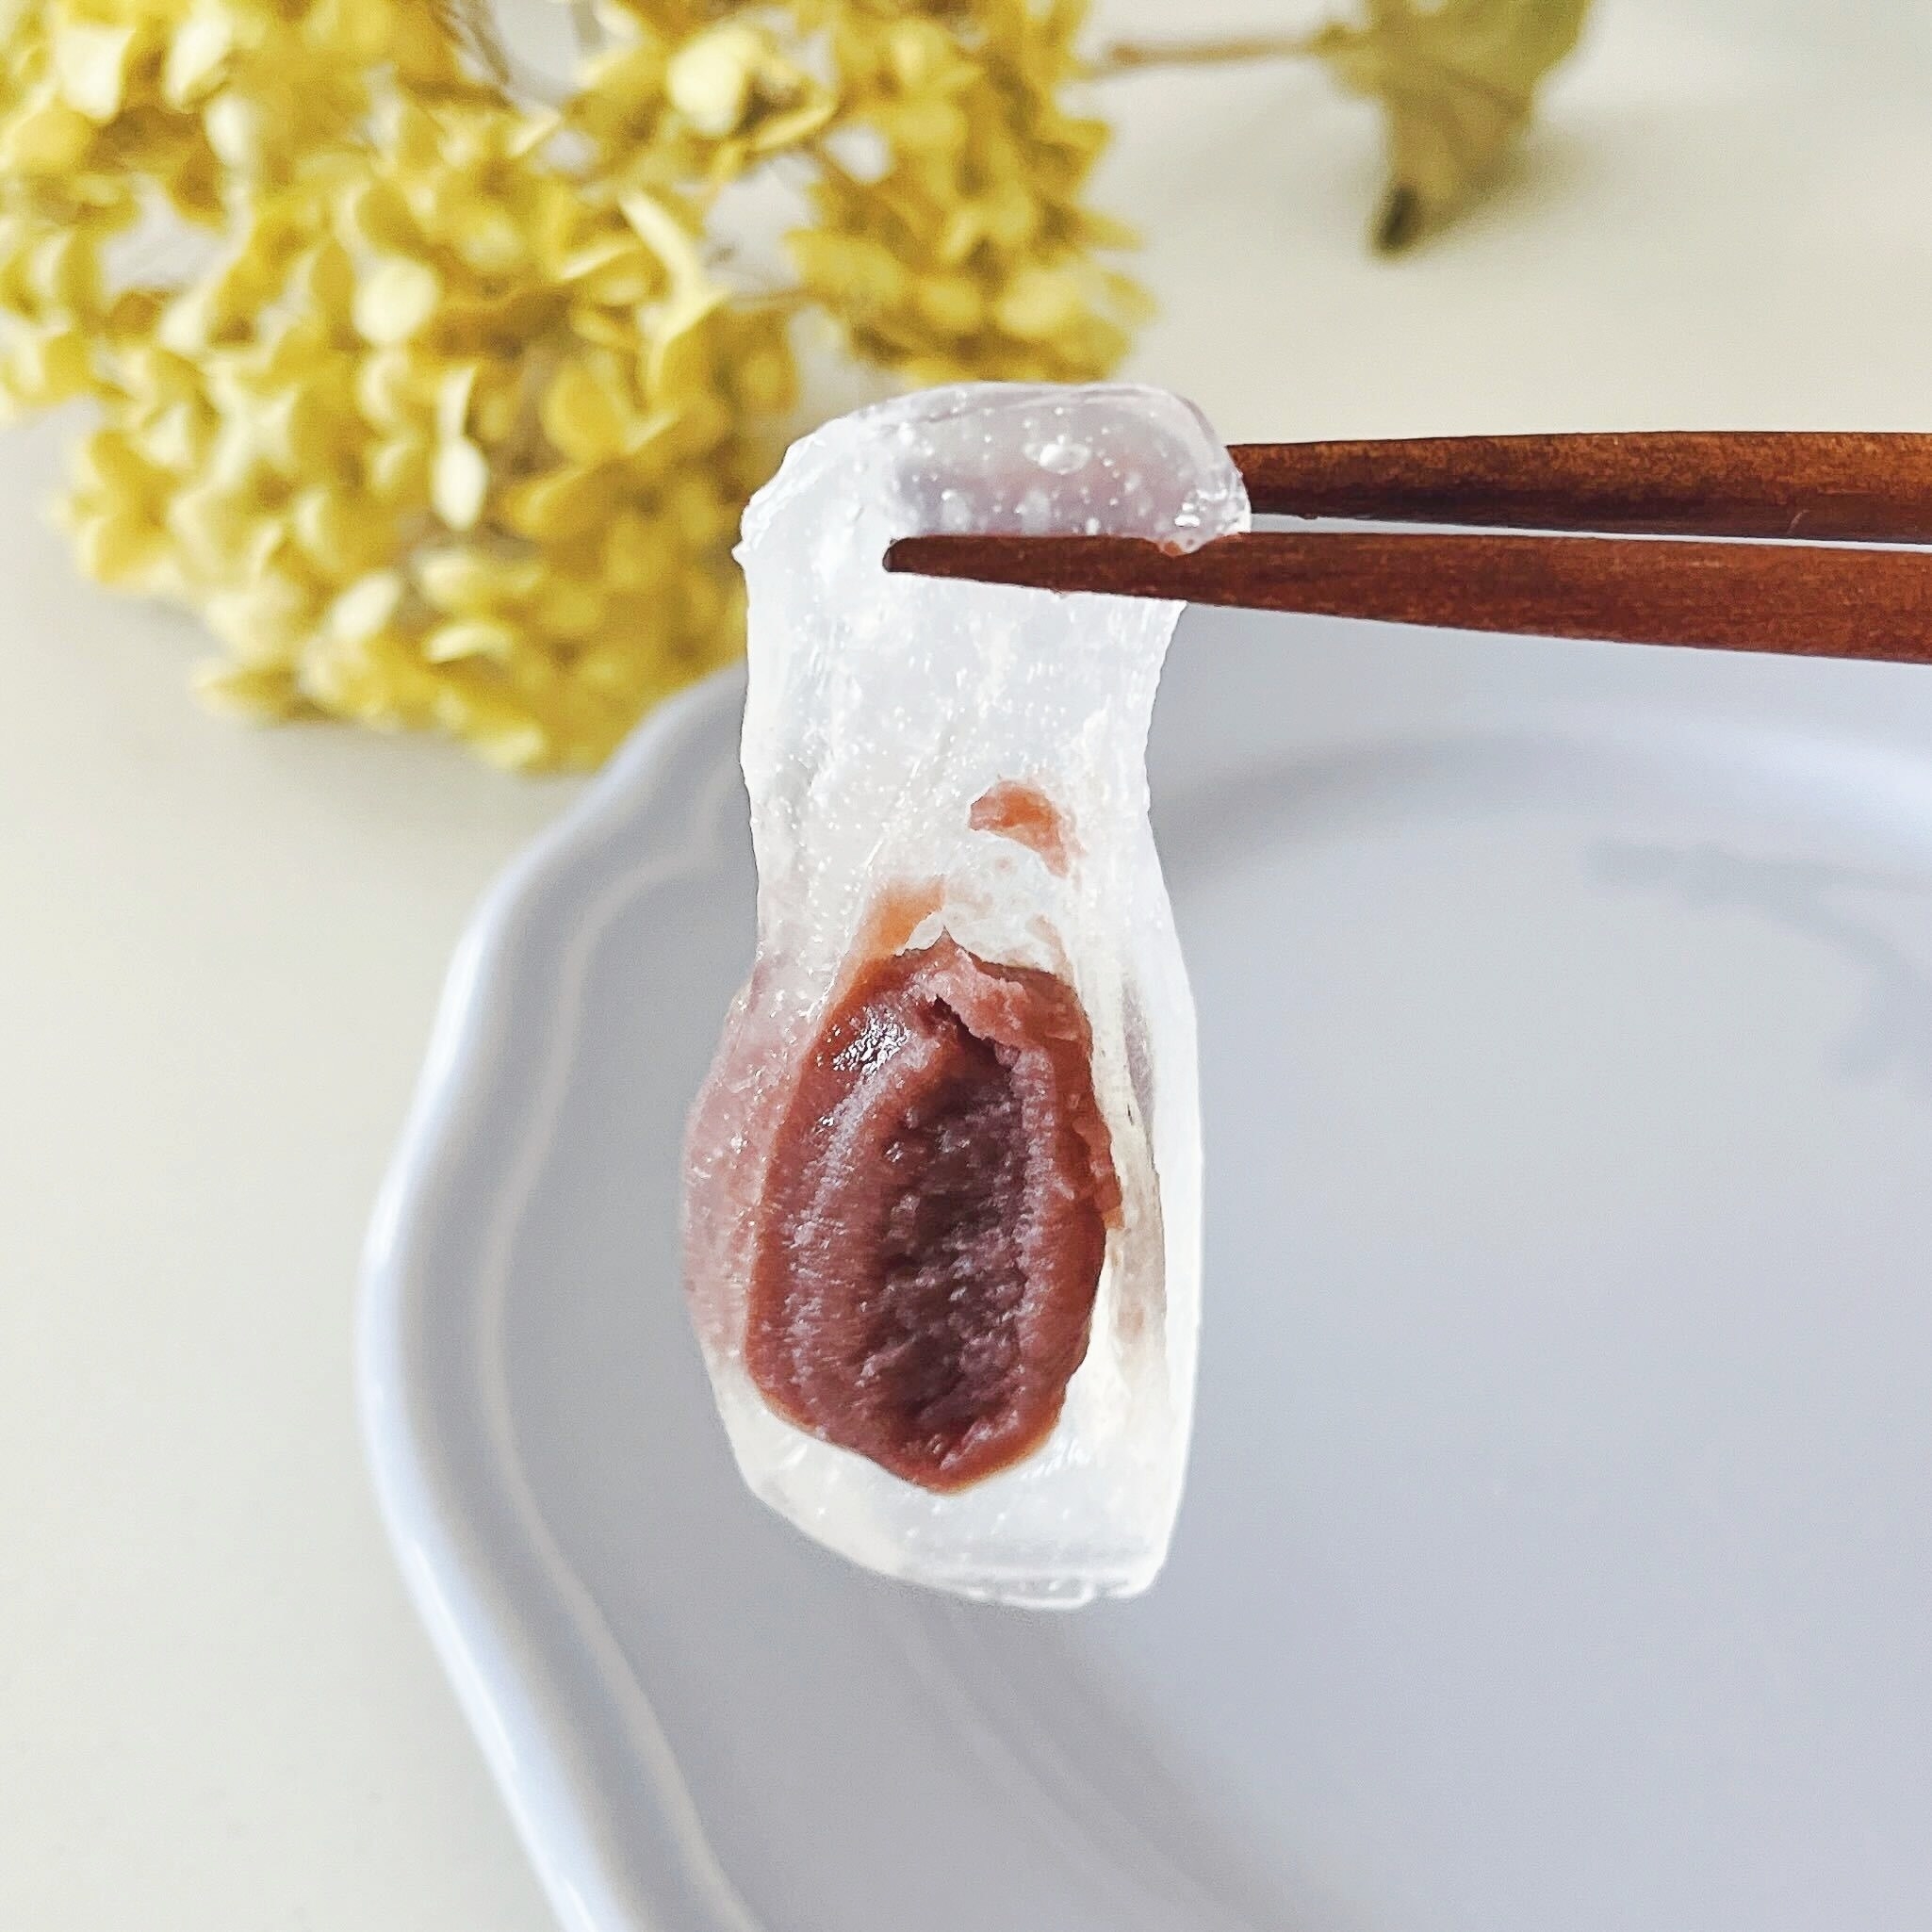 セブン-イレブンのオススメの和菓子「北海道十勝産小豆使用 冷やし葛まんじゅう」